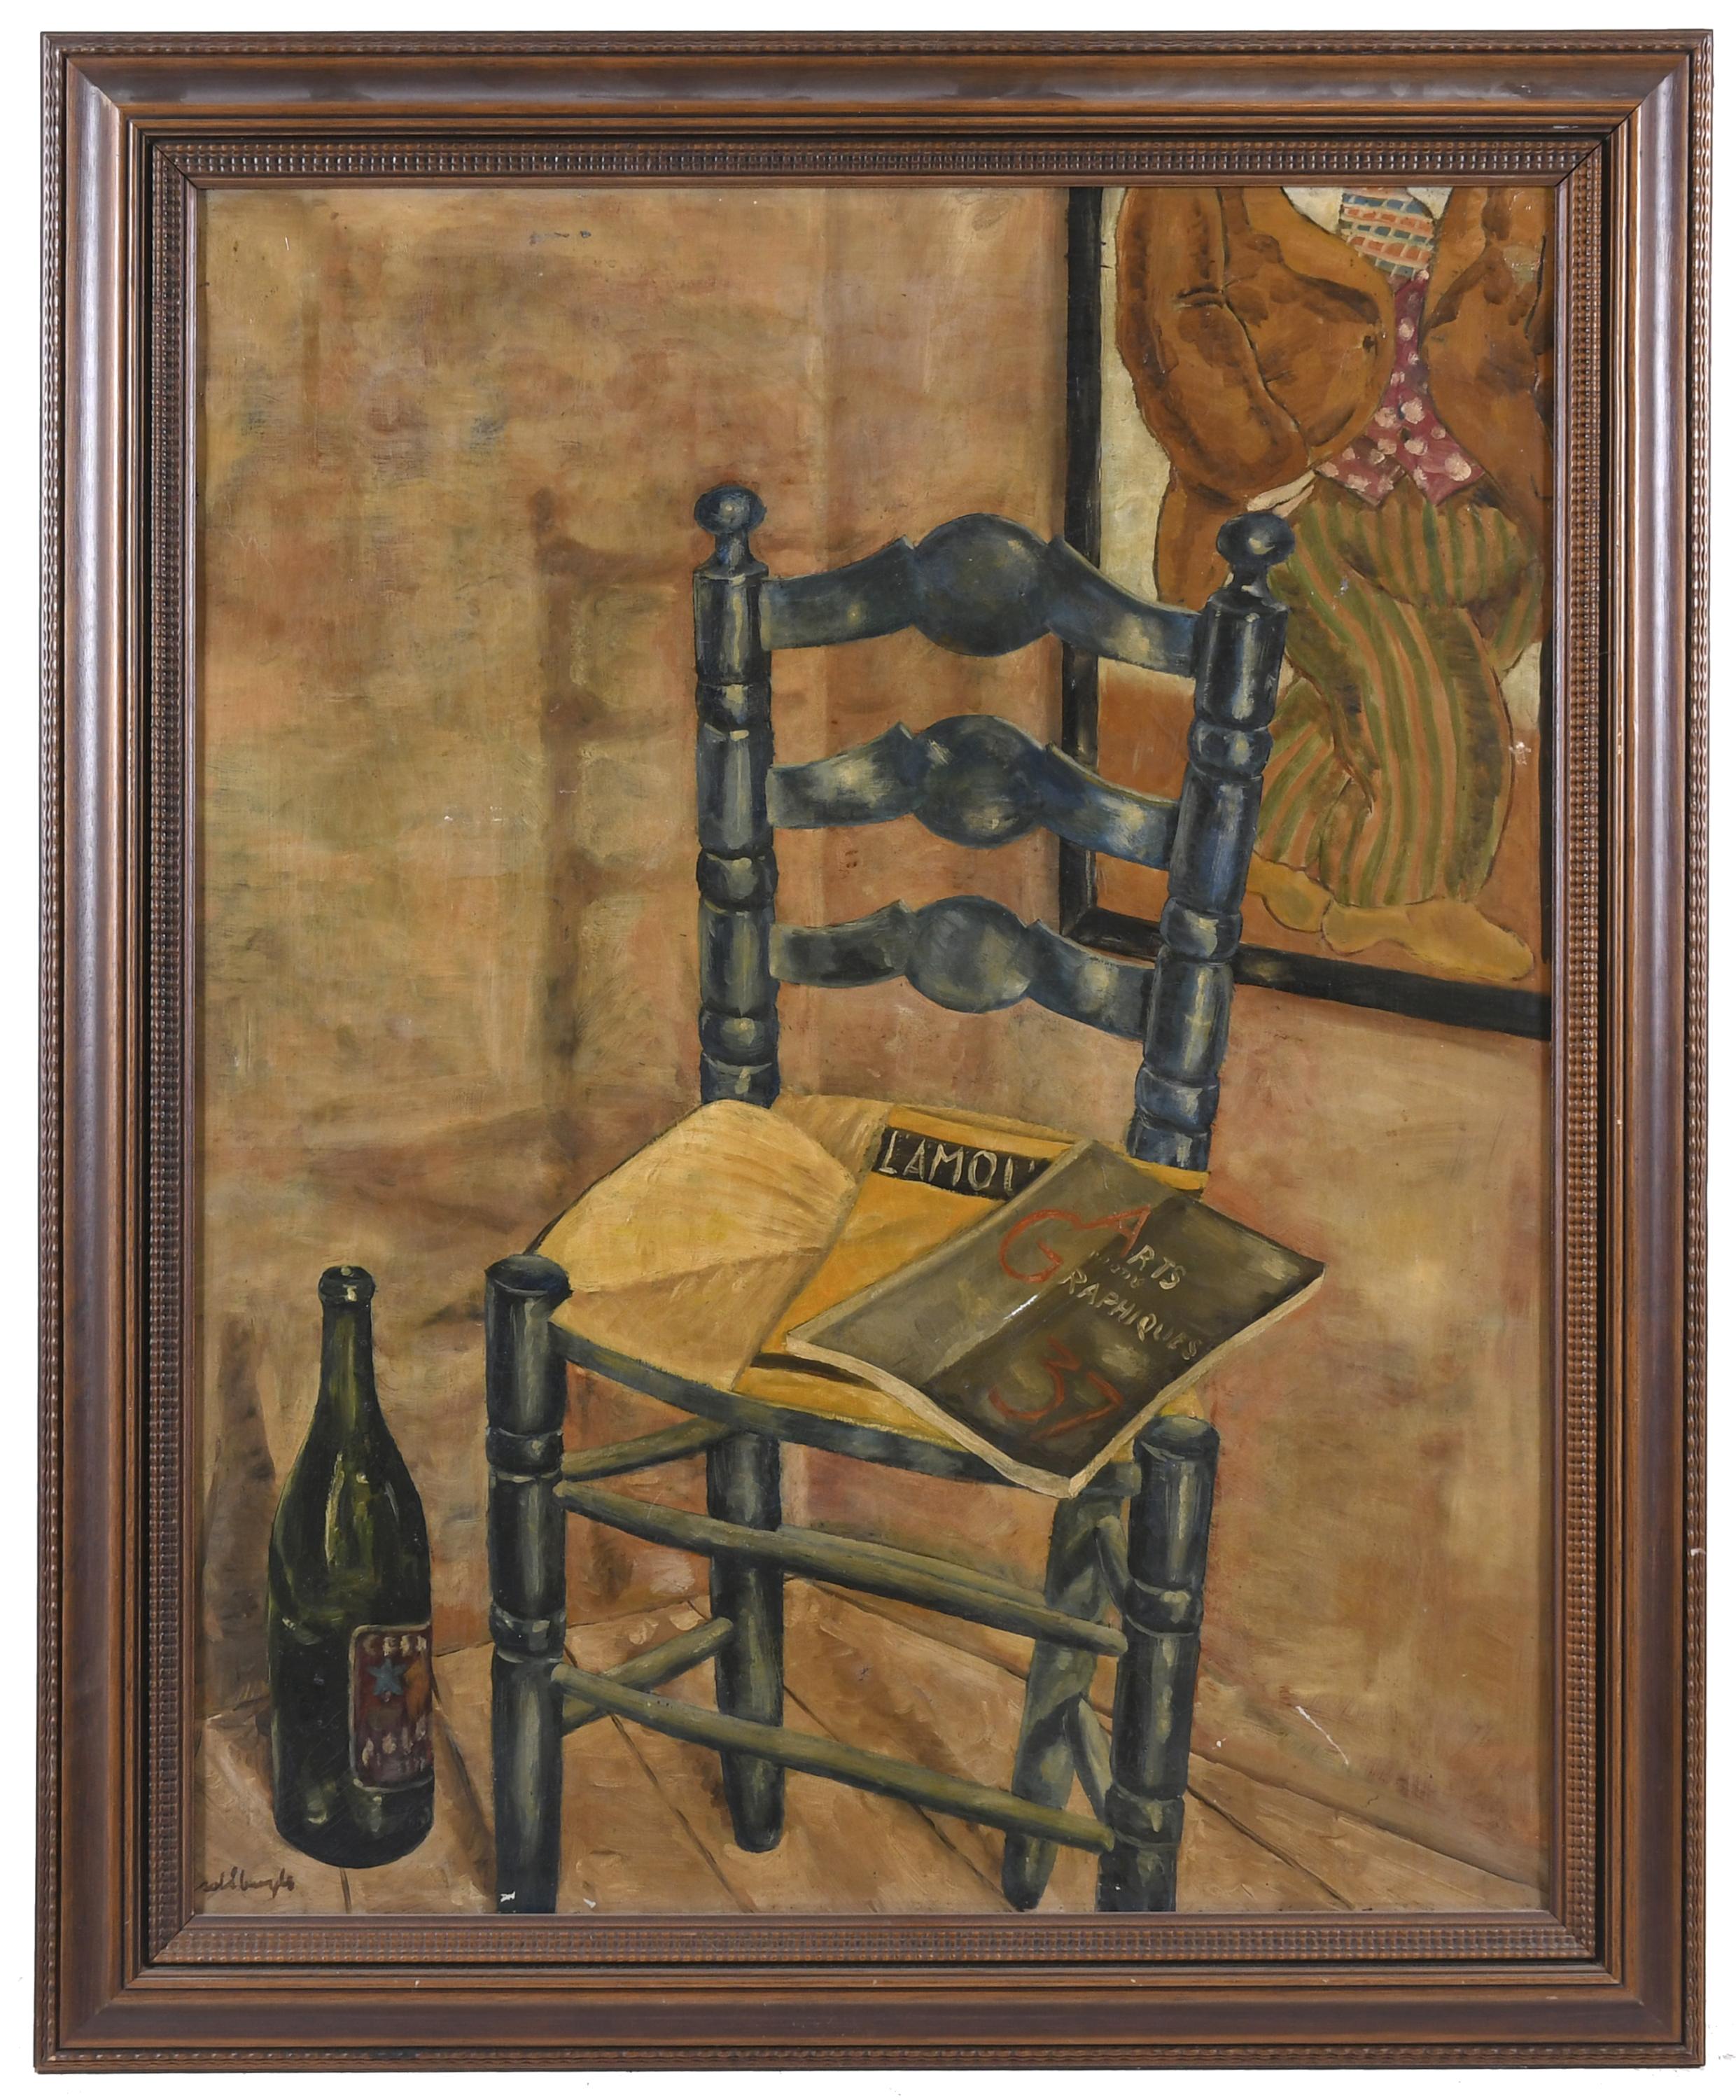 MIQUEL SOLE BOYLS (1903-1977) "CADIRA", 1935.